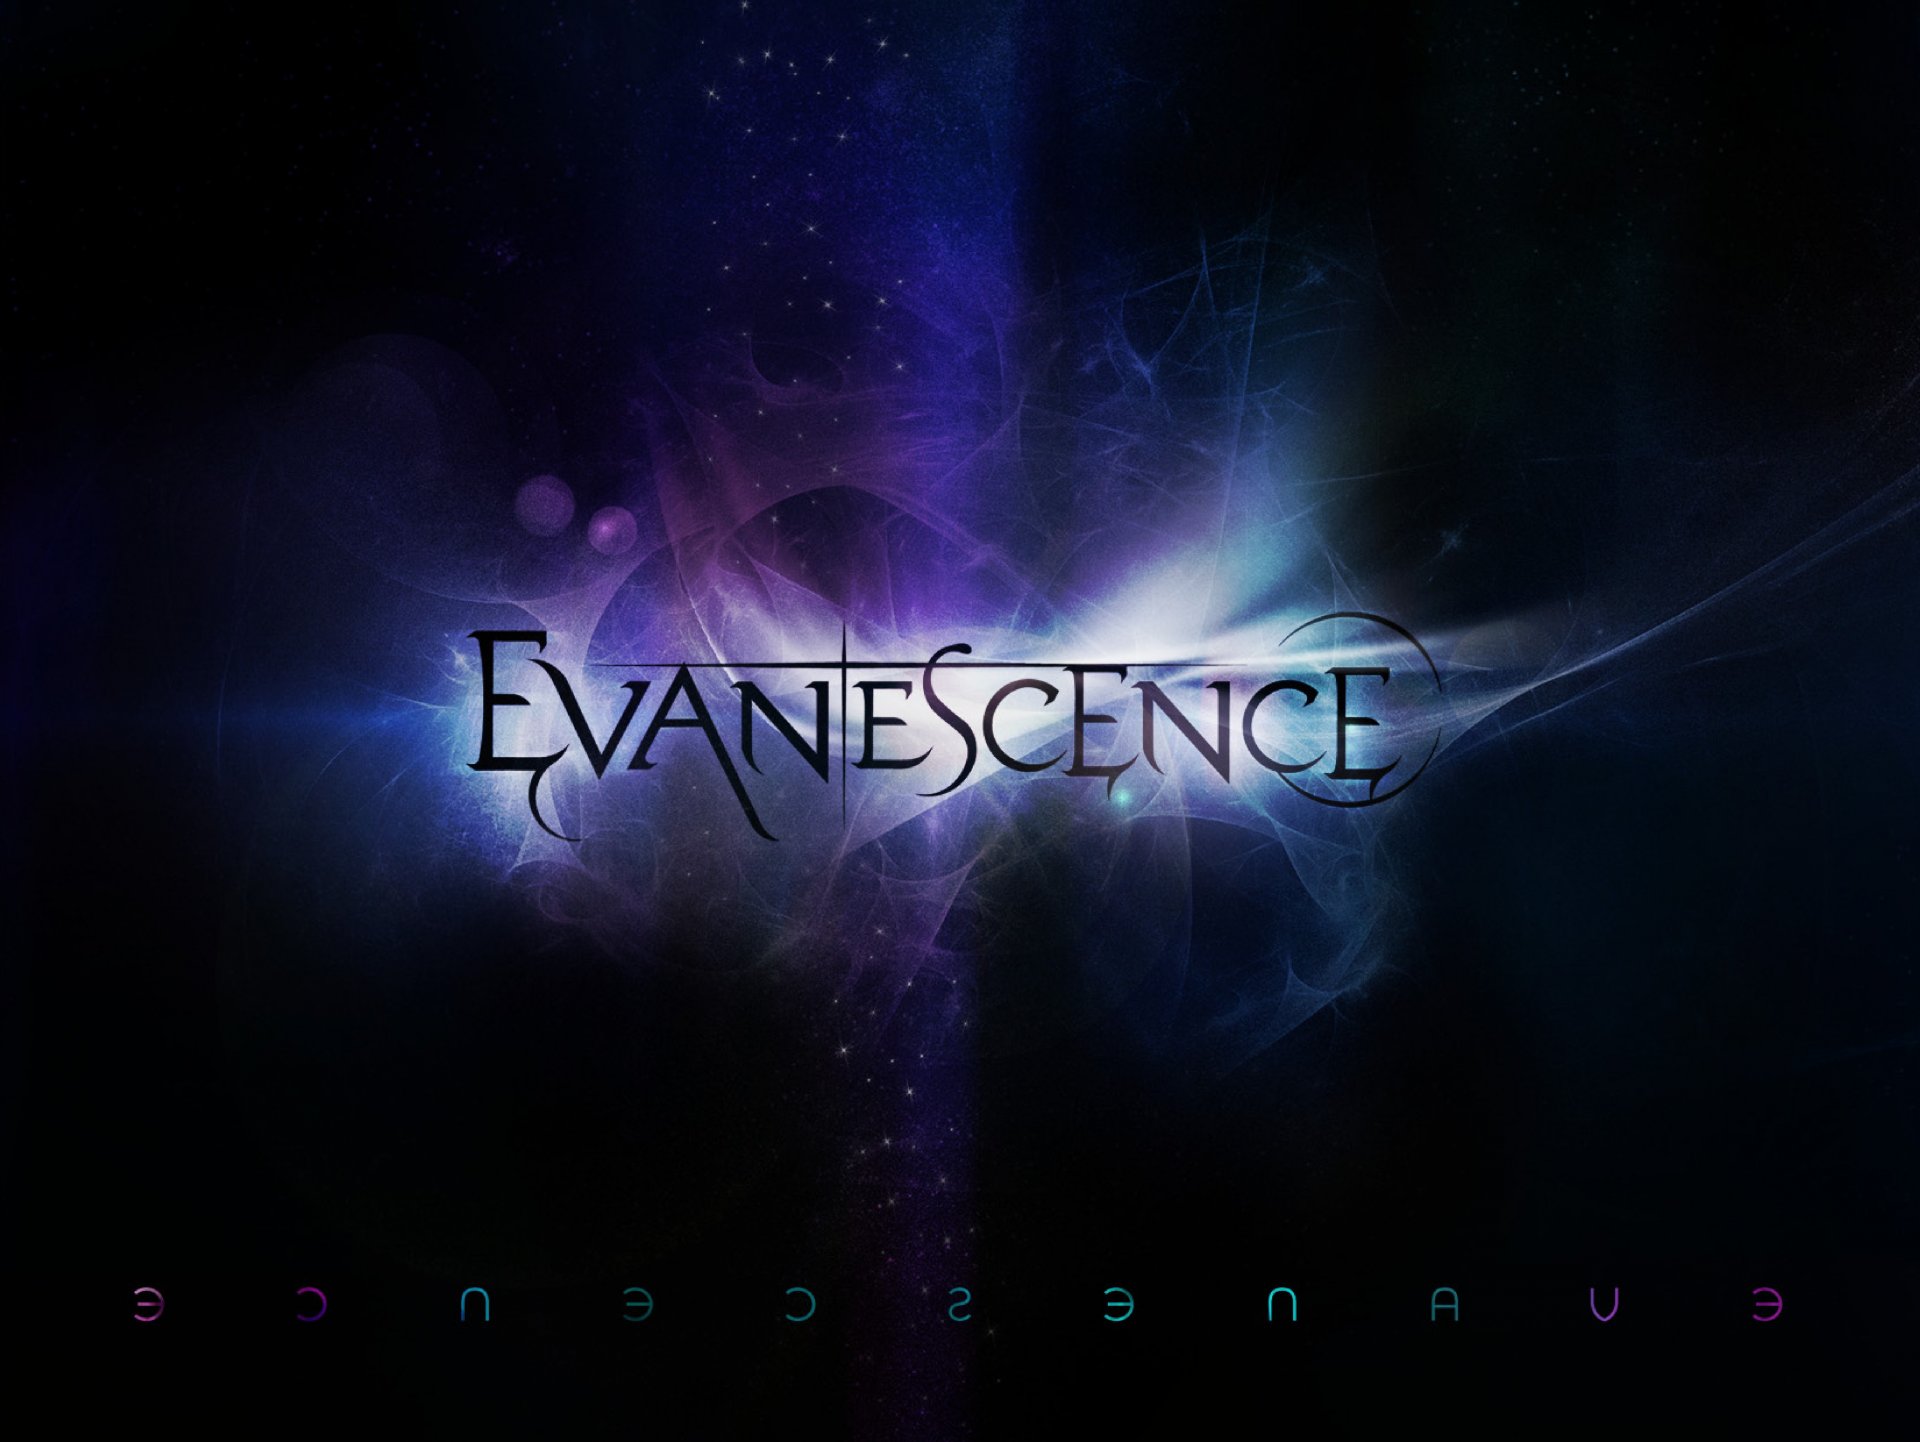 evanescence новый альбом 2011 группа эми ли эванесенс